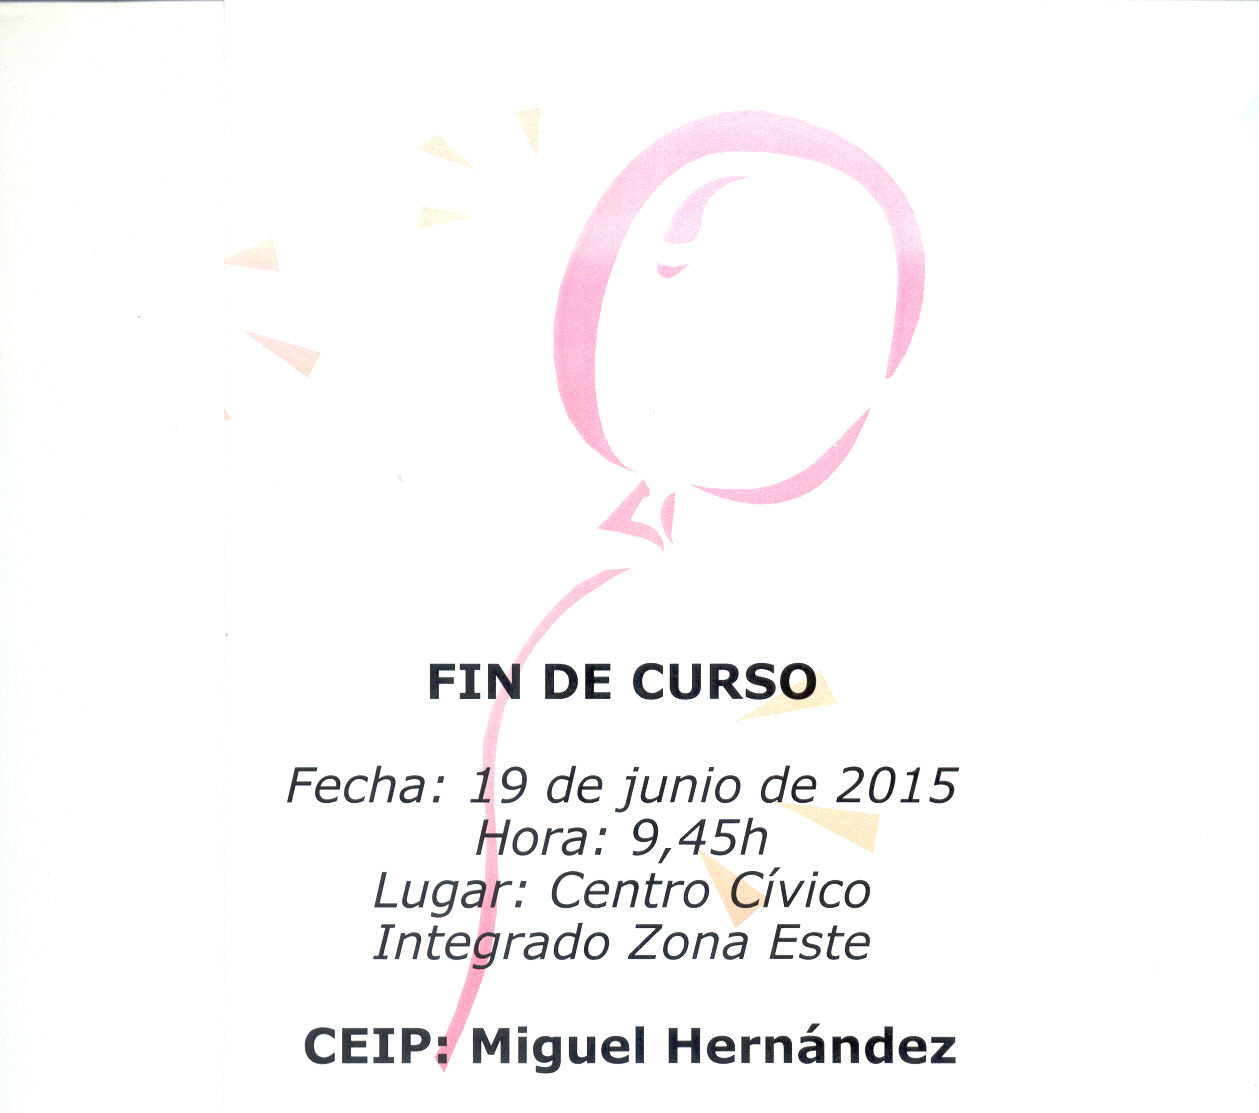 Fiesta Fin de Curso 2015